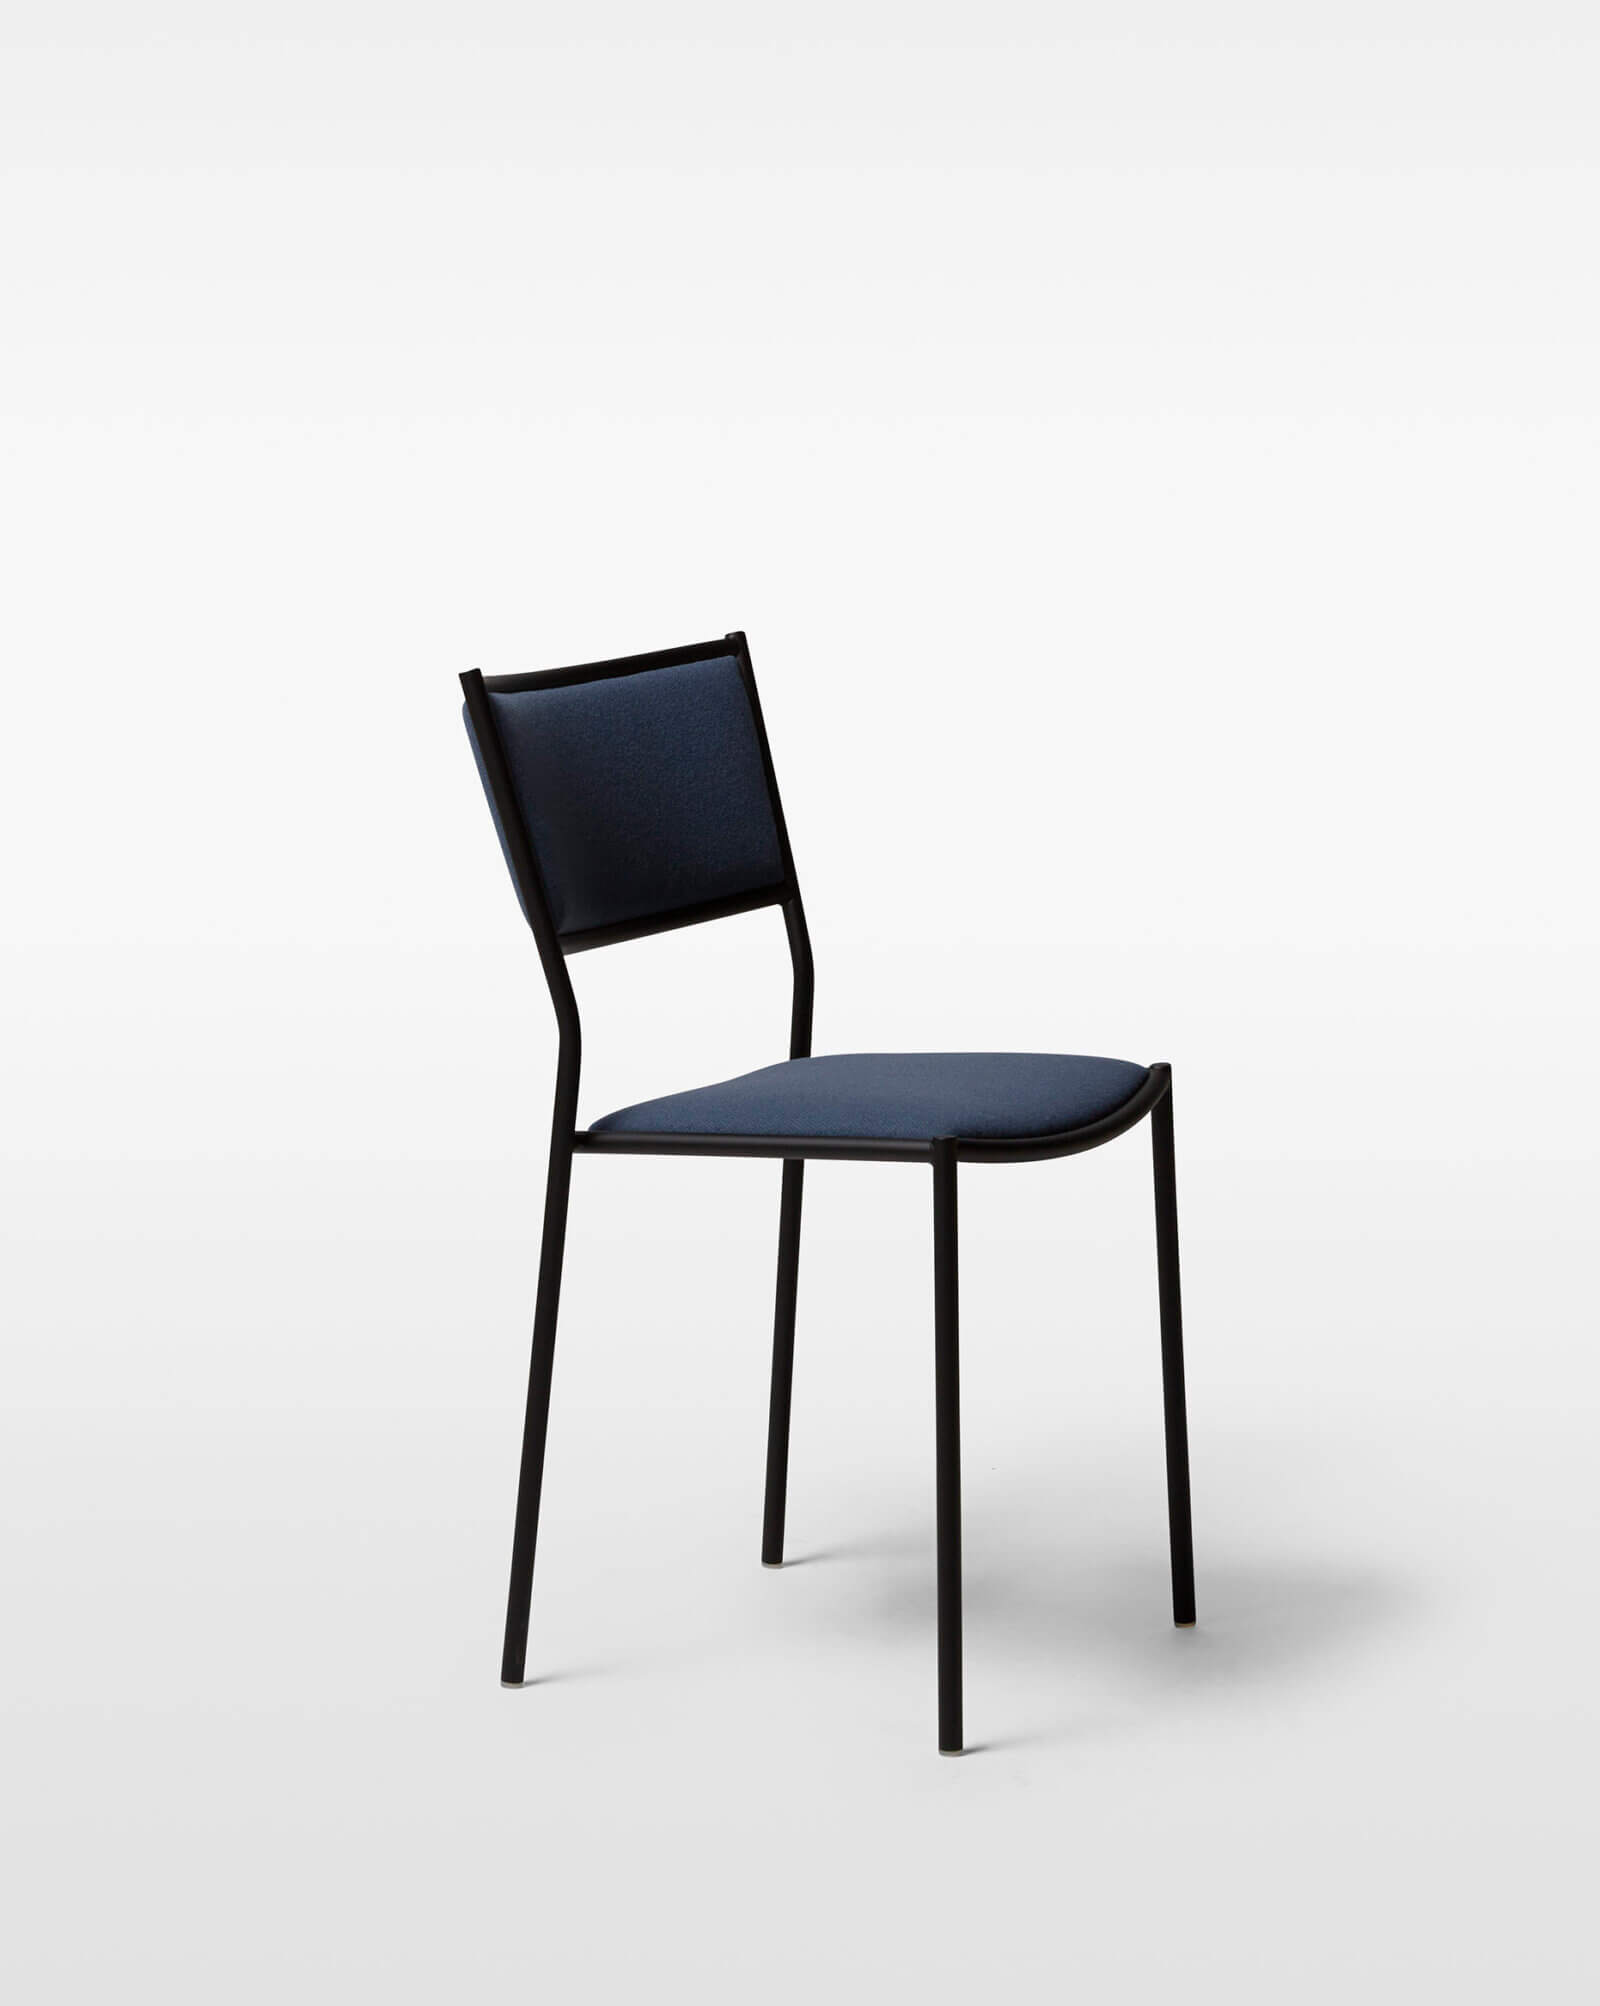 TinnappleMetz-massproductions-jig-chair-01